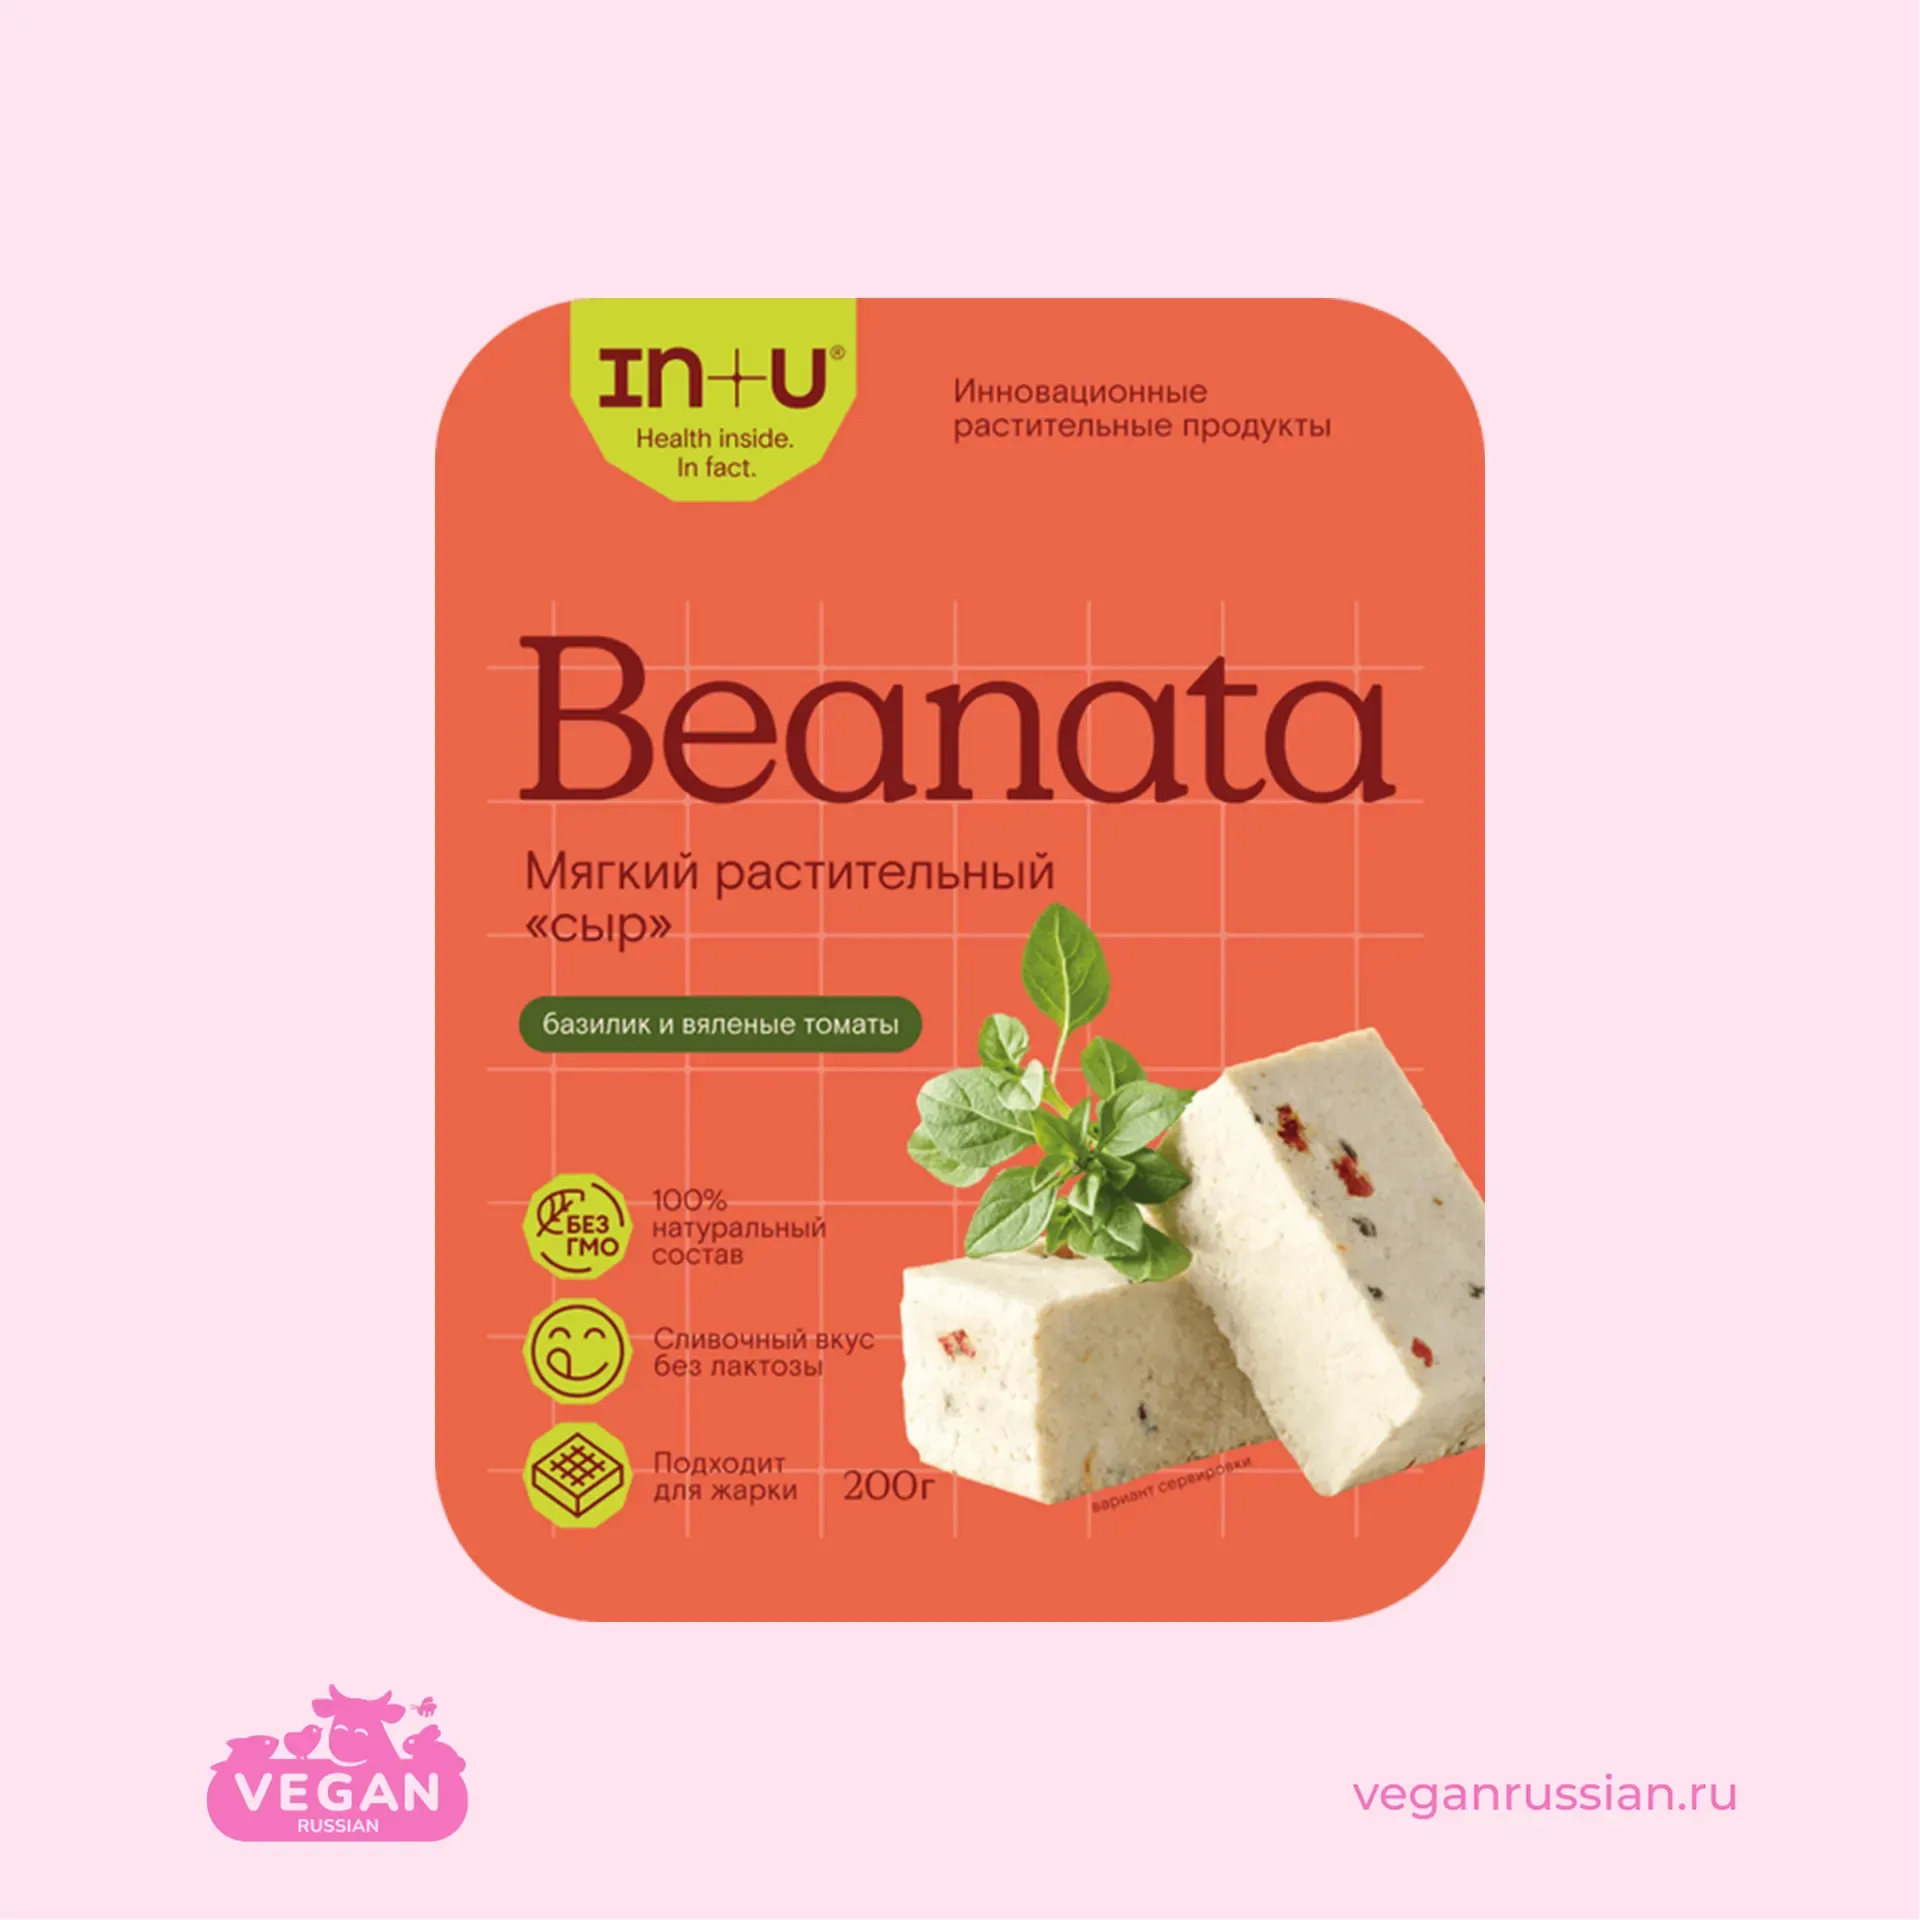 Мягкий растительный сыр базилик и вяленые томаты Beanata In+U 200 г